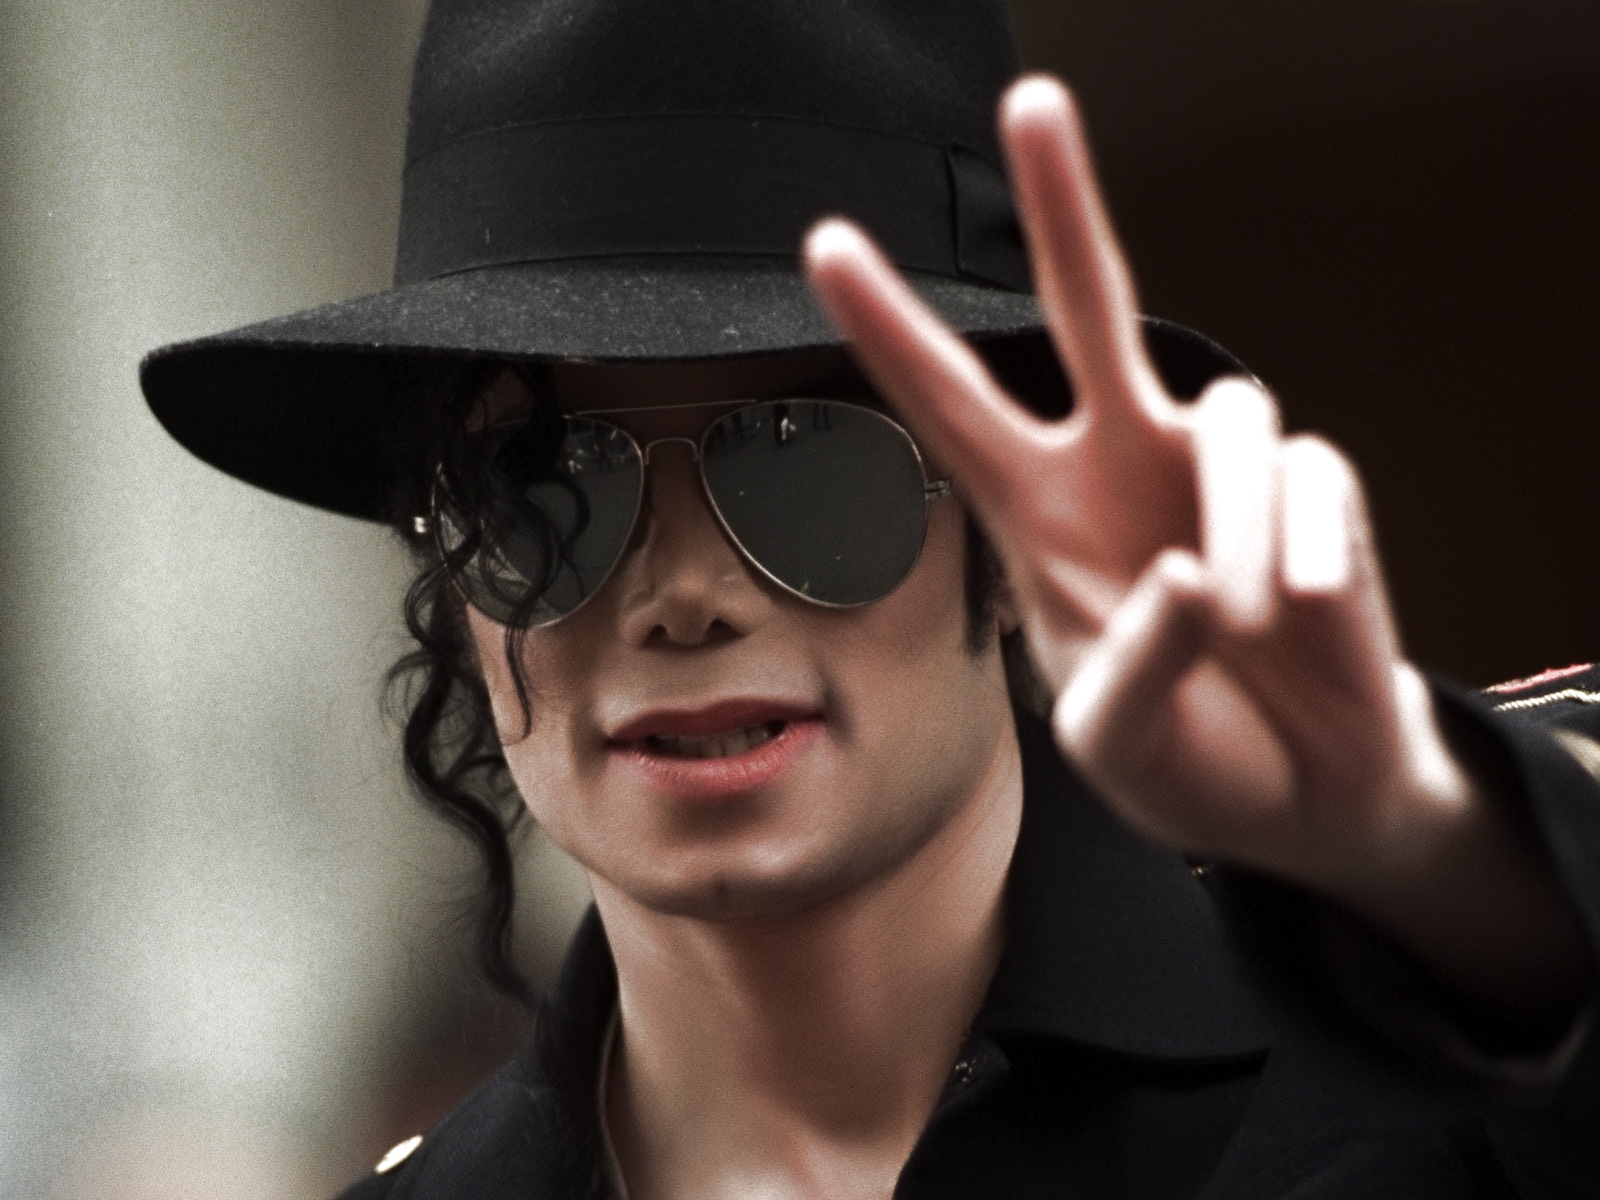 Lanzarán serie de los últimos meses de vida de Michael Jackson